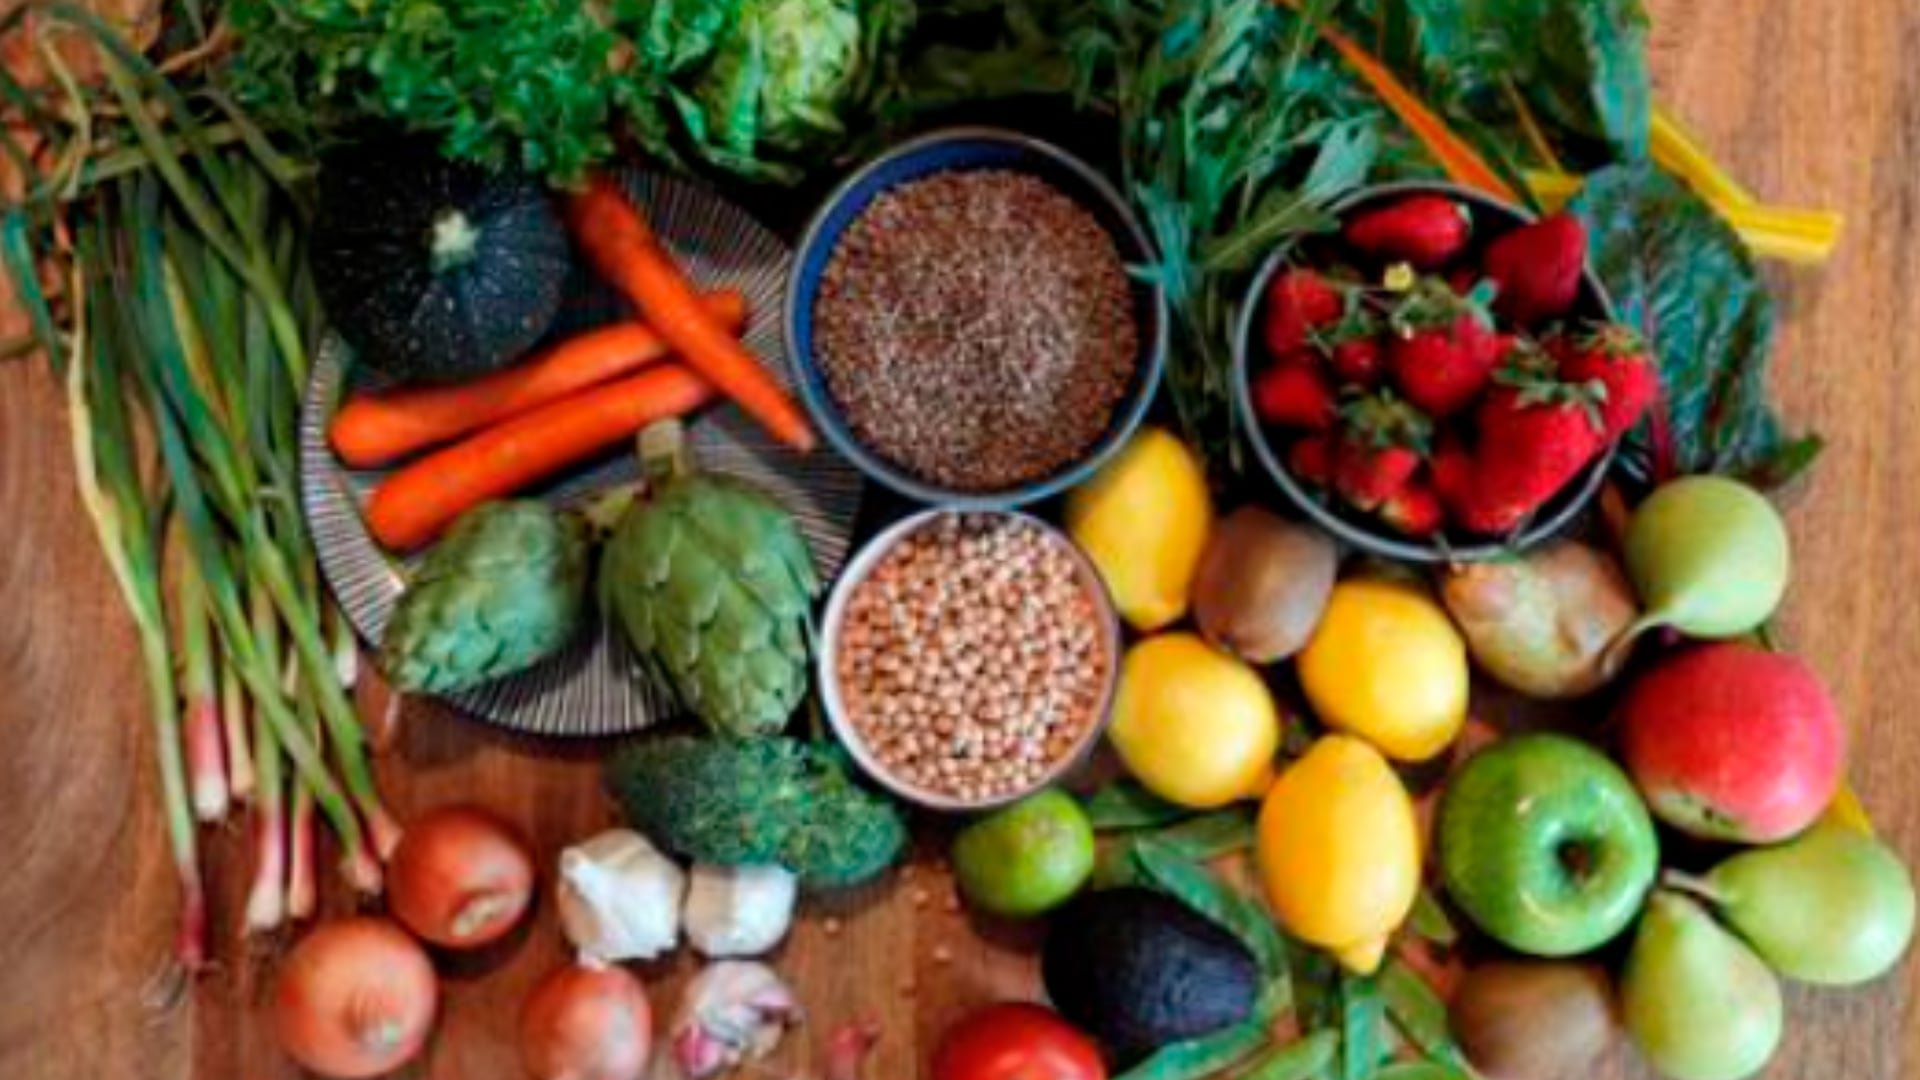 La evidencia científica avala los beneficios de una dieta basada en frutas, verduras, grasas saludables y reducida en azúcares y harinas refinadas (Efe) 